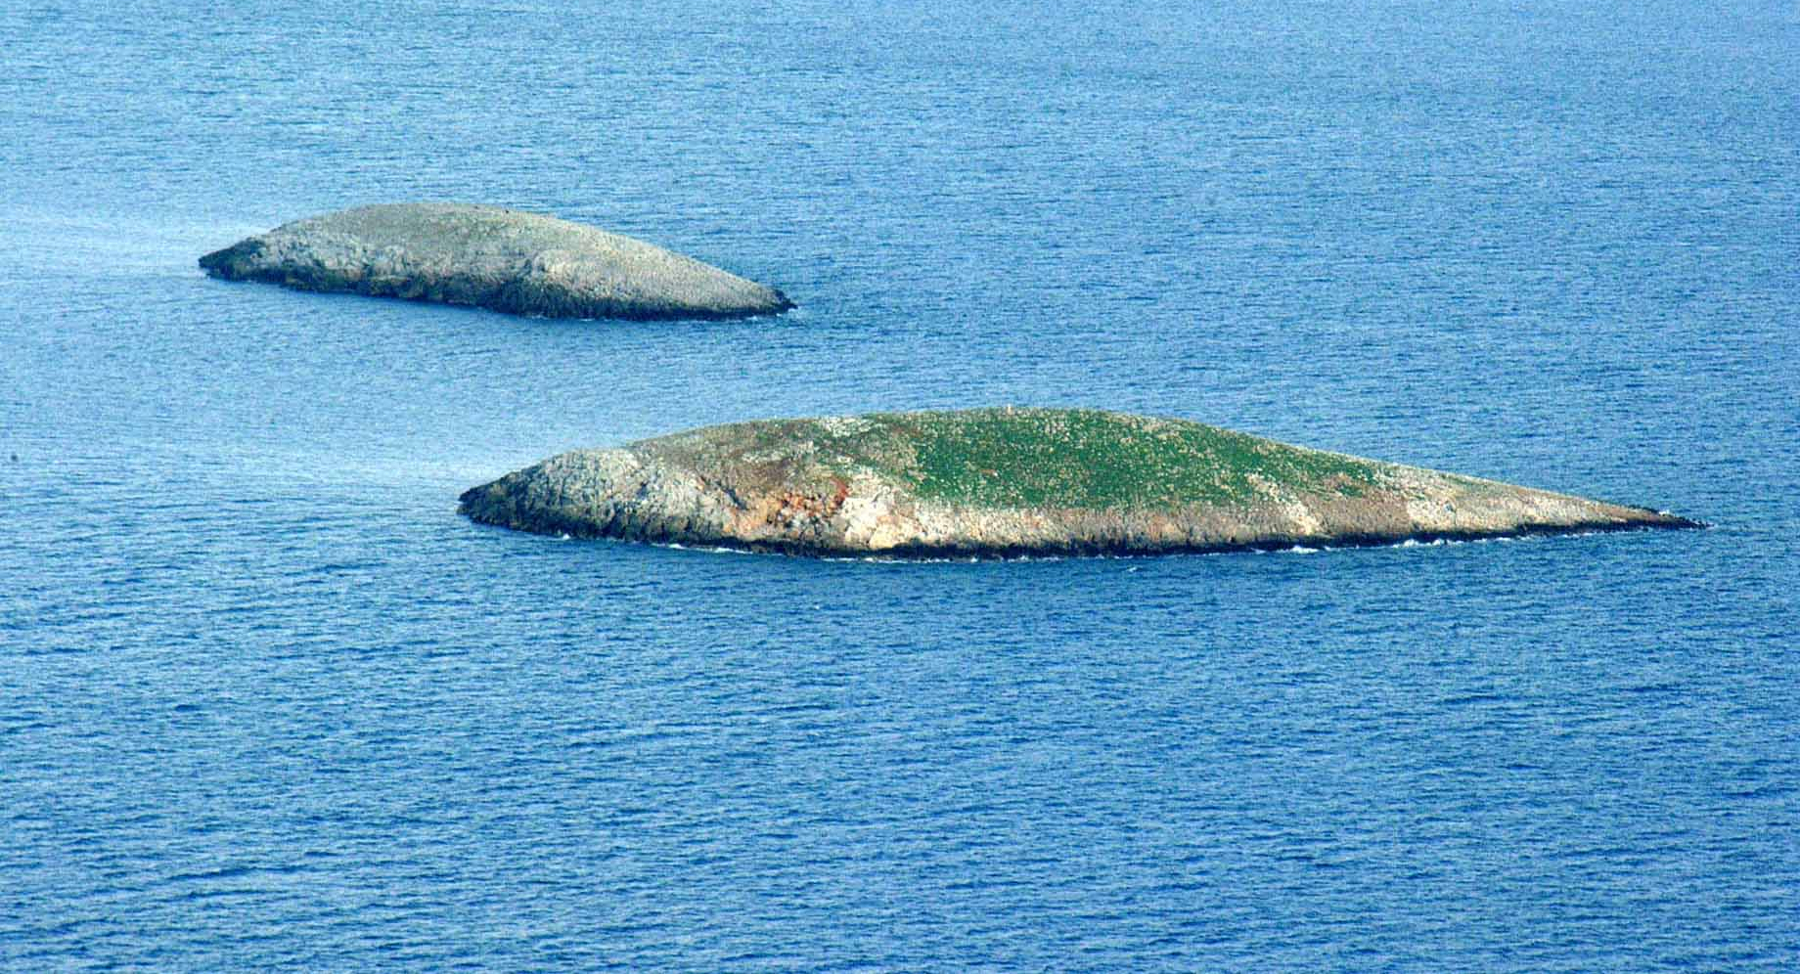 Περιφερειάρχης Νοτίου Αιγαίου: «Τα Ίμια είναι και θα παραμείνουν νησιά του Επαρχείου Καλύμνου»